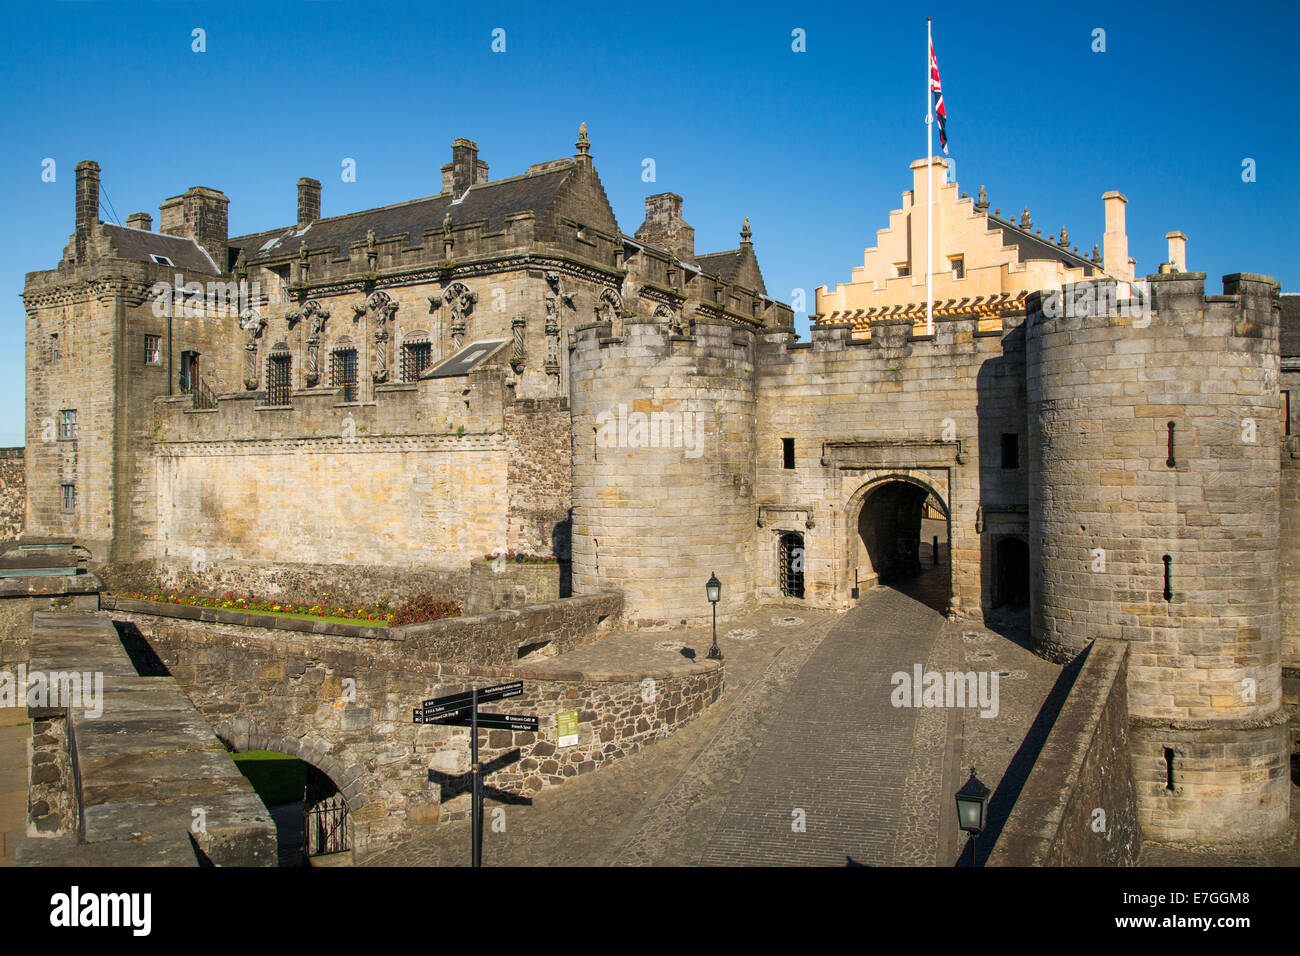 Eingang zum Stirling Castle - Geburtsort von Mary Queen of Scots, Stirling, Schottland Stockfoto